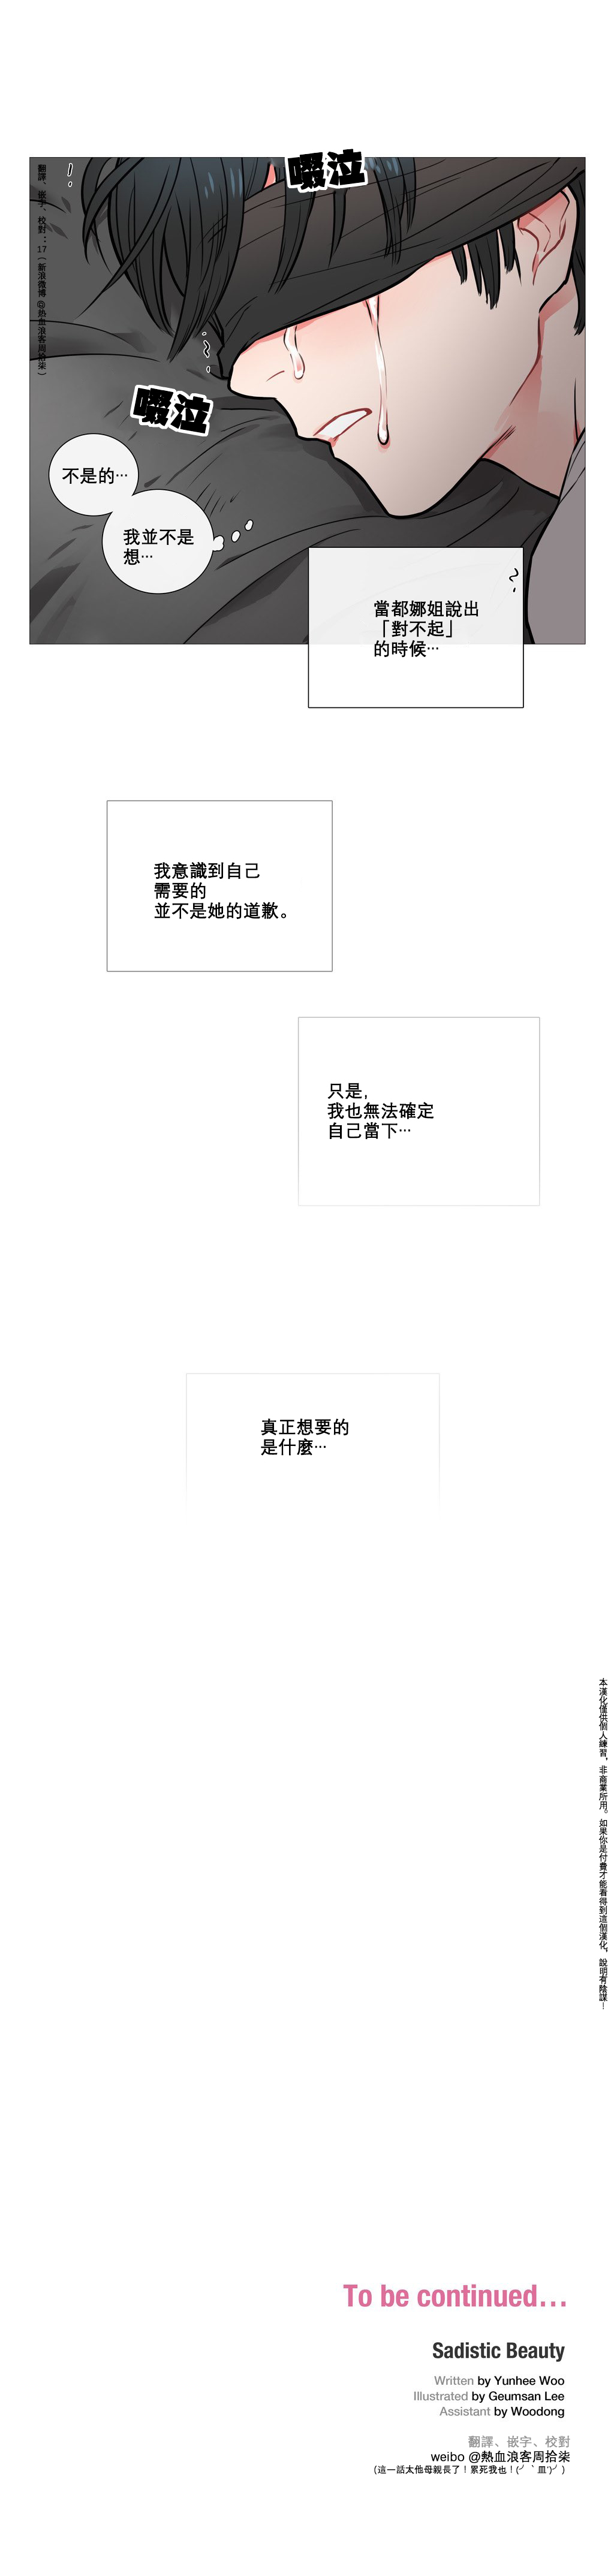 【神山】サディスティックビューティーCh.1-38【中国語】【17汉化】